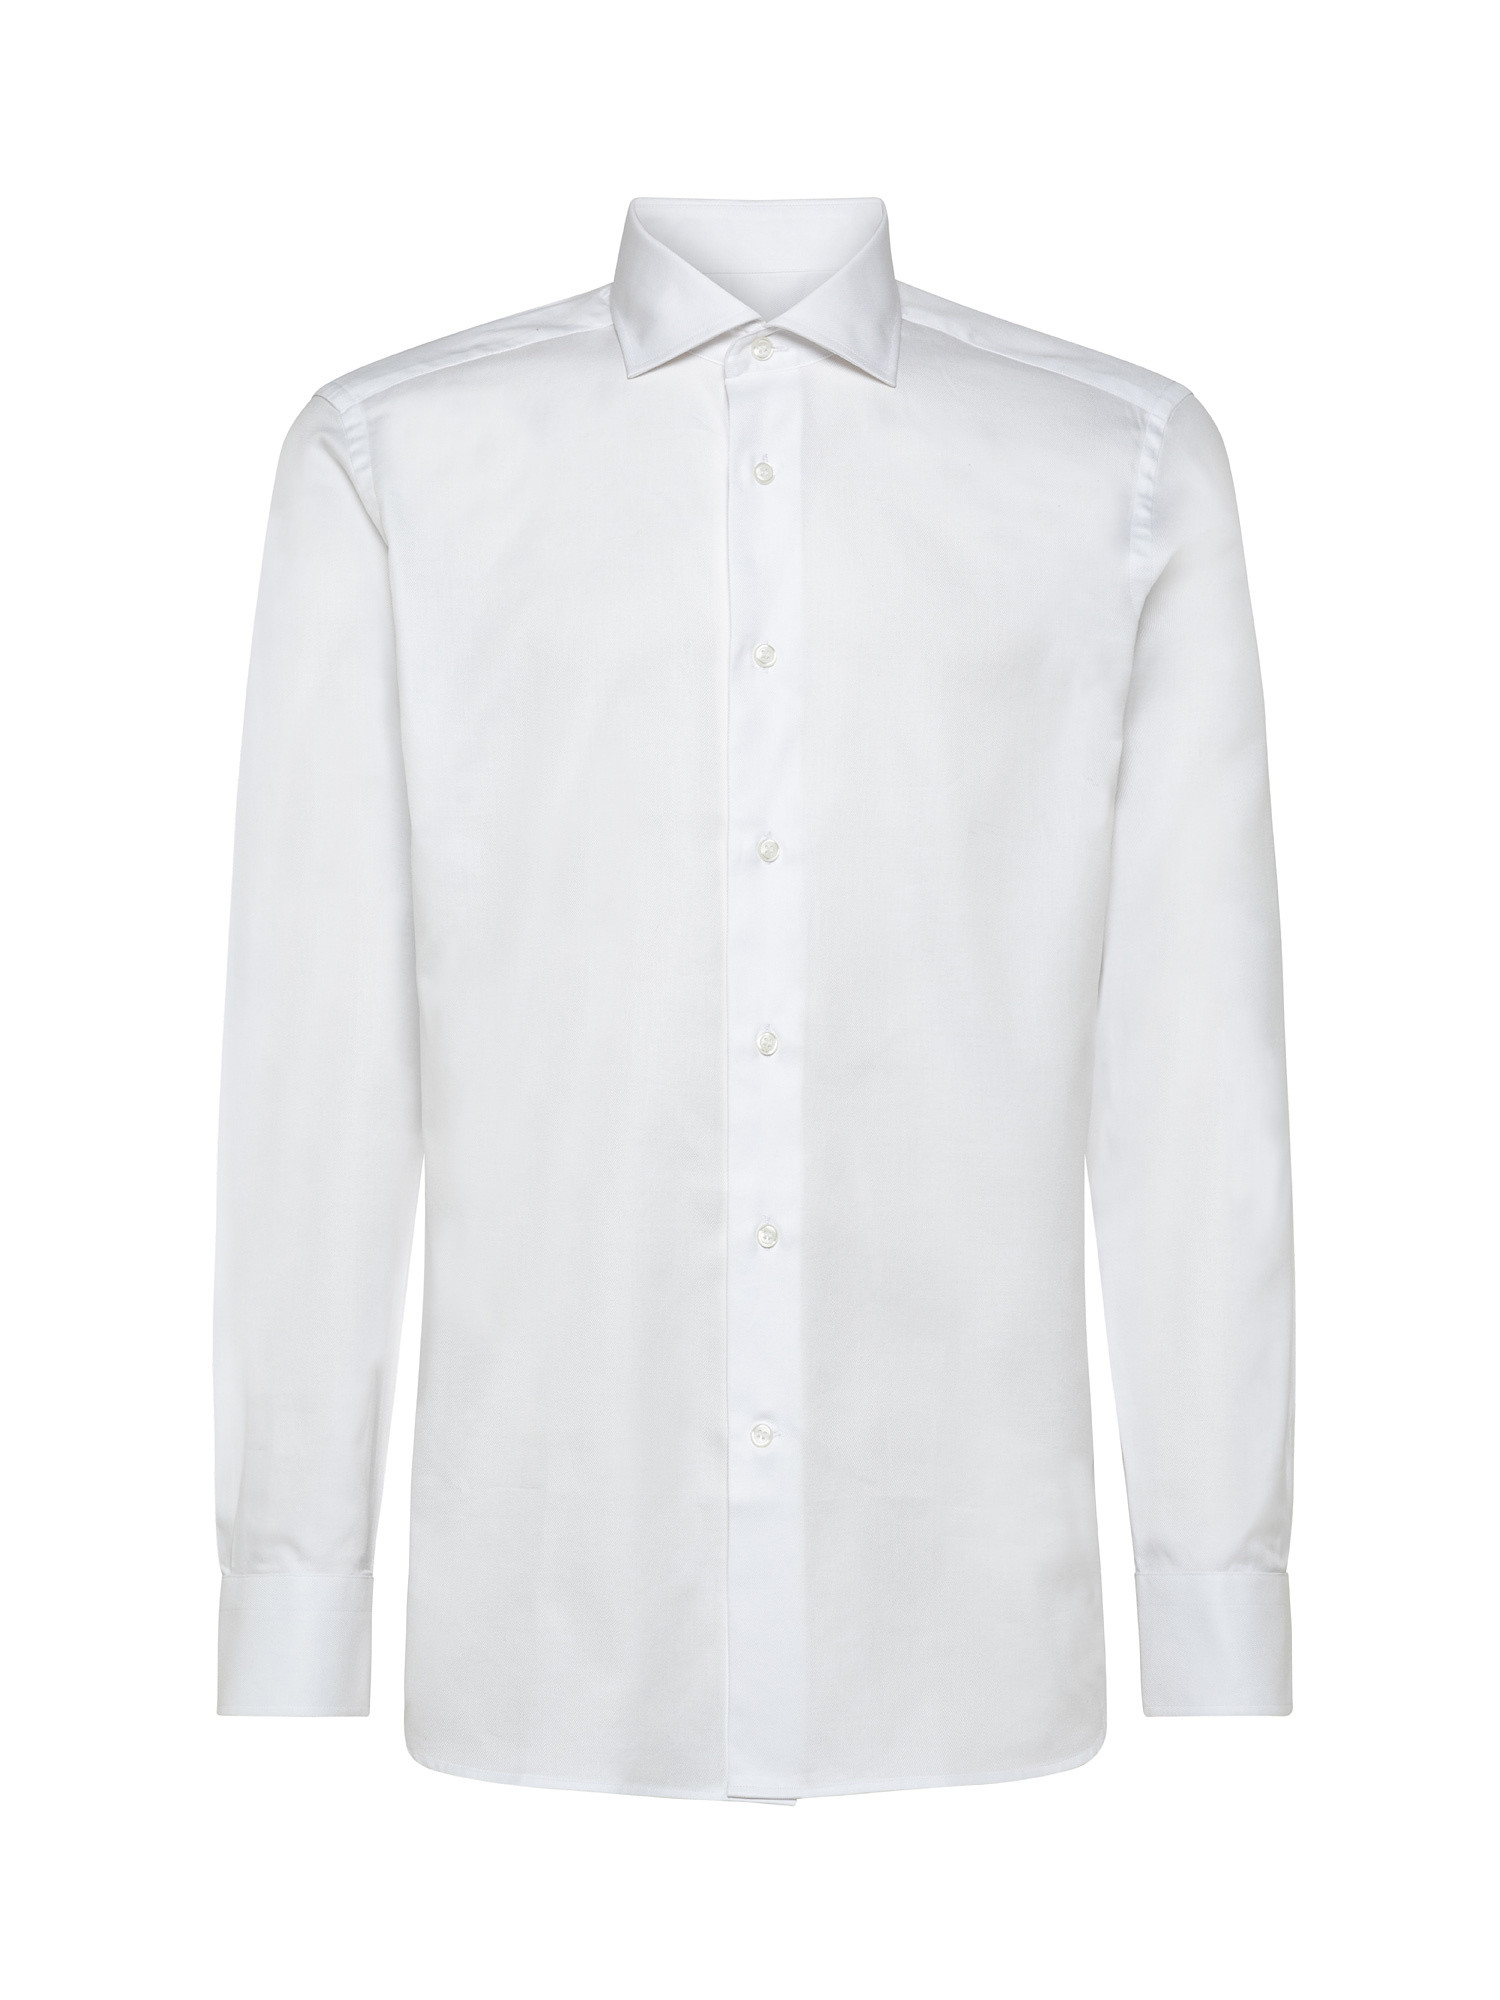 Camicia slim fit in twill di cotone, Bianco, large